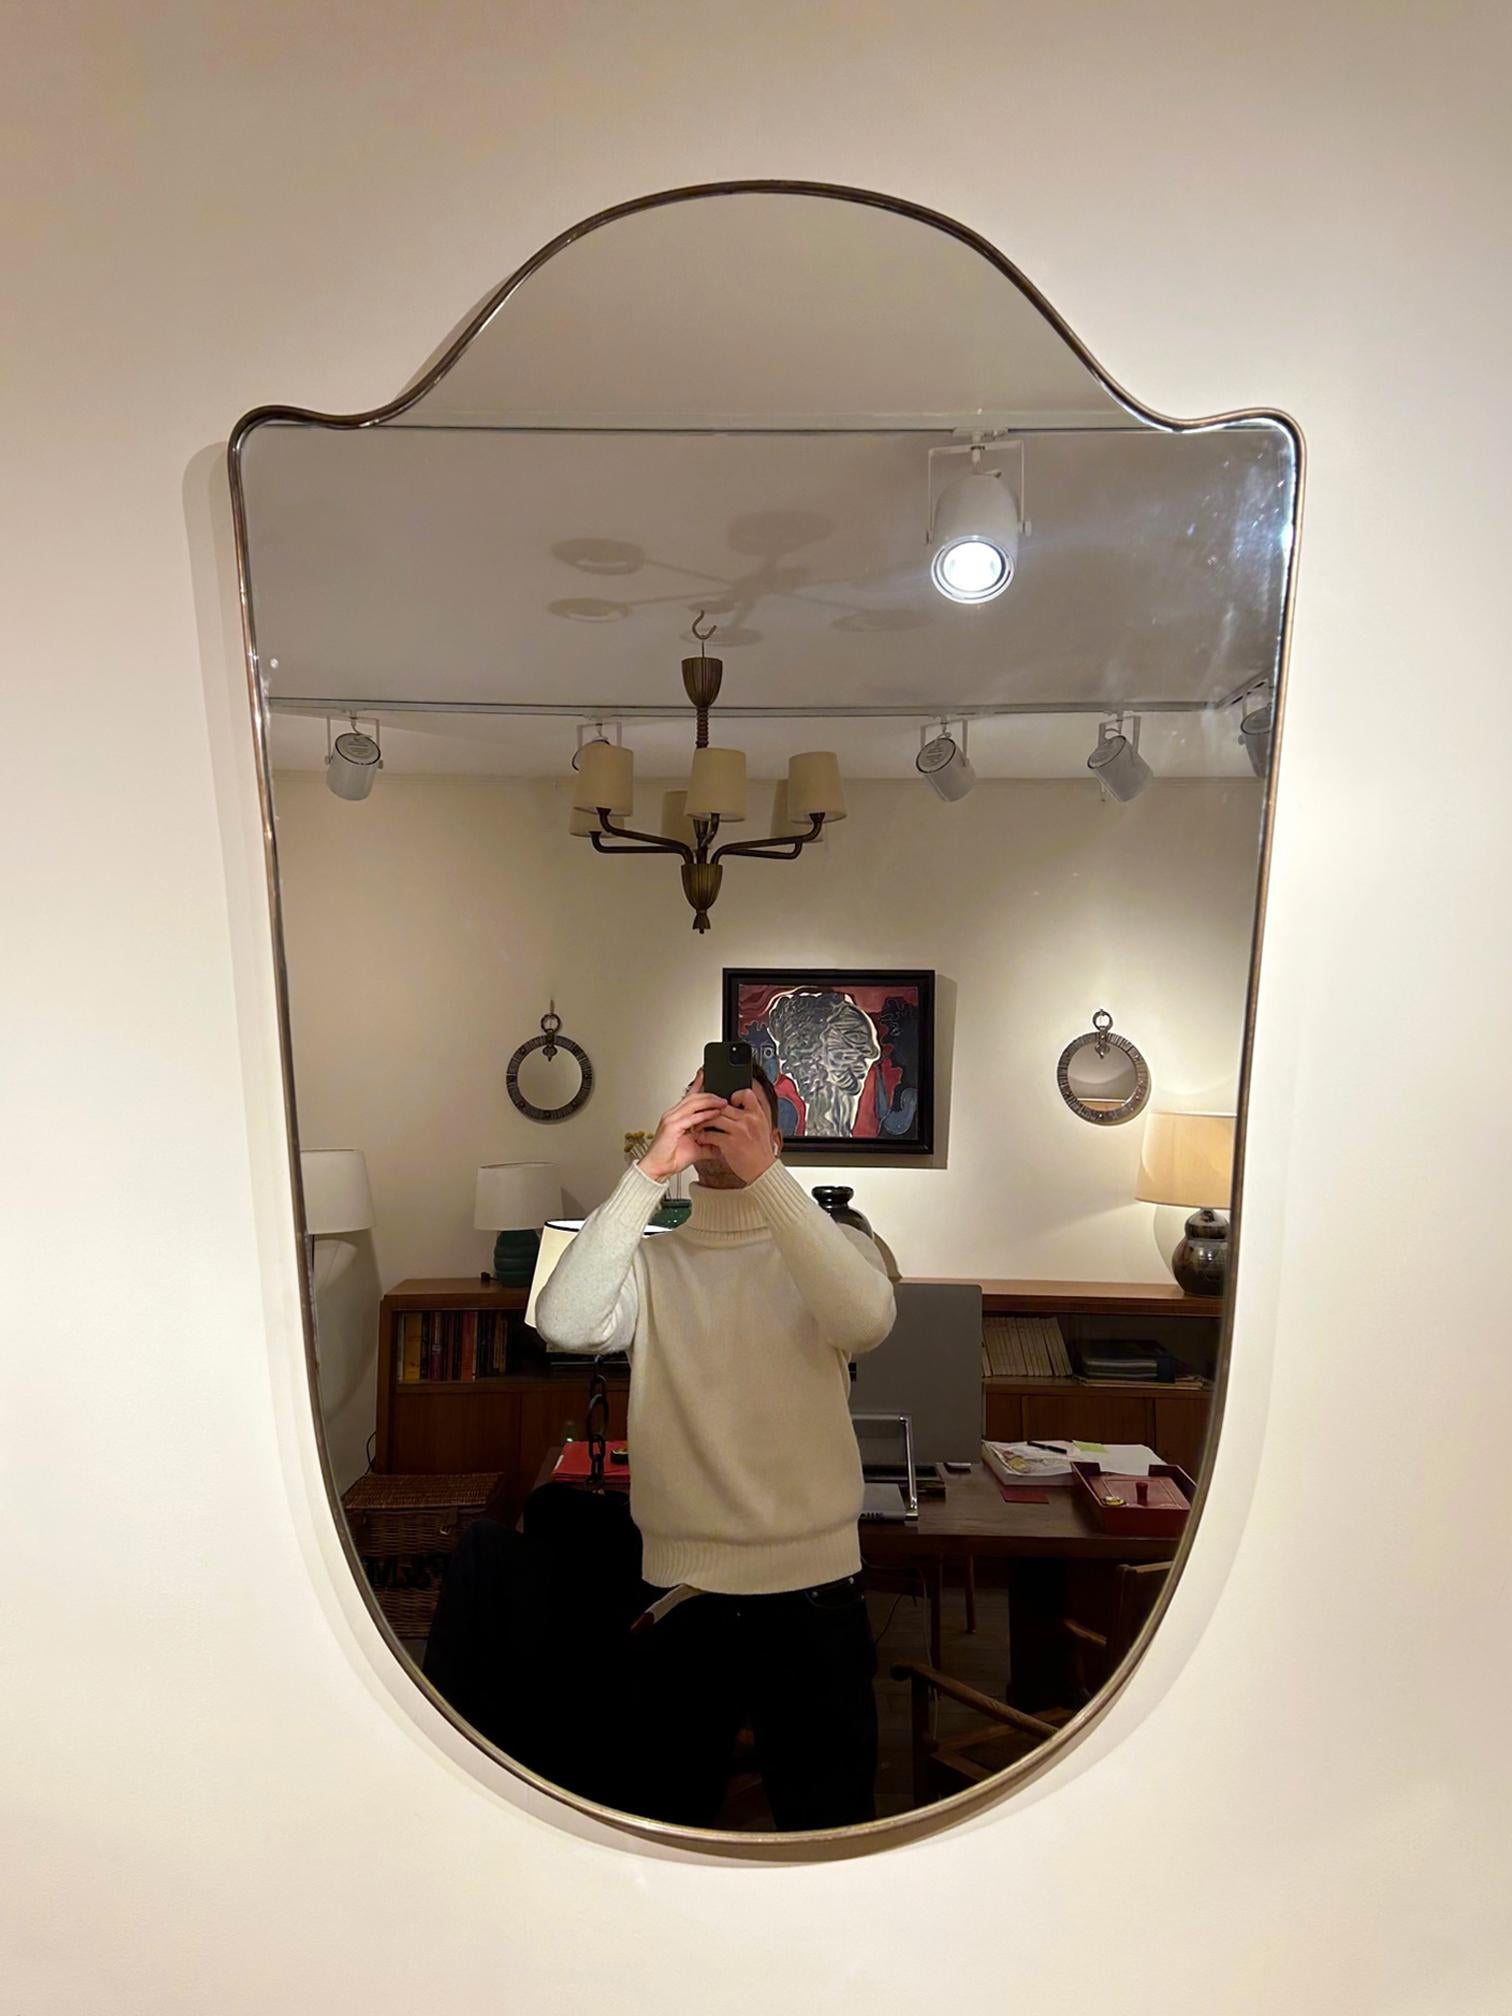 Grand miroir en laiton en forme de bouclier
Italie, contemporaine
122 cm de haut par 80 cm de large par 2,5 cm de profondeur